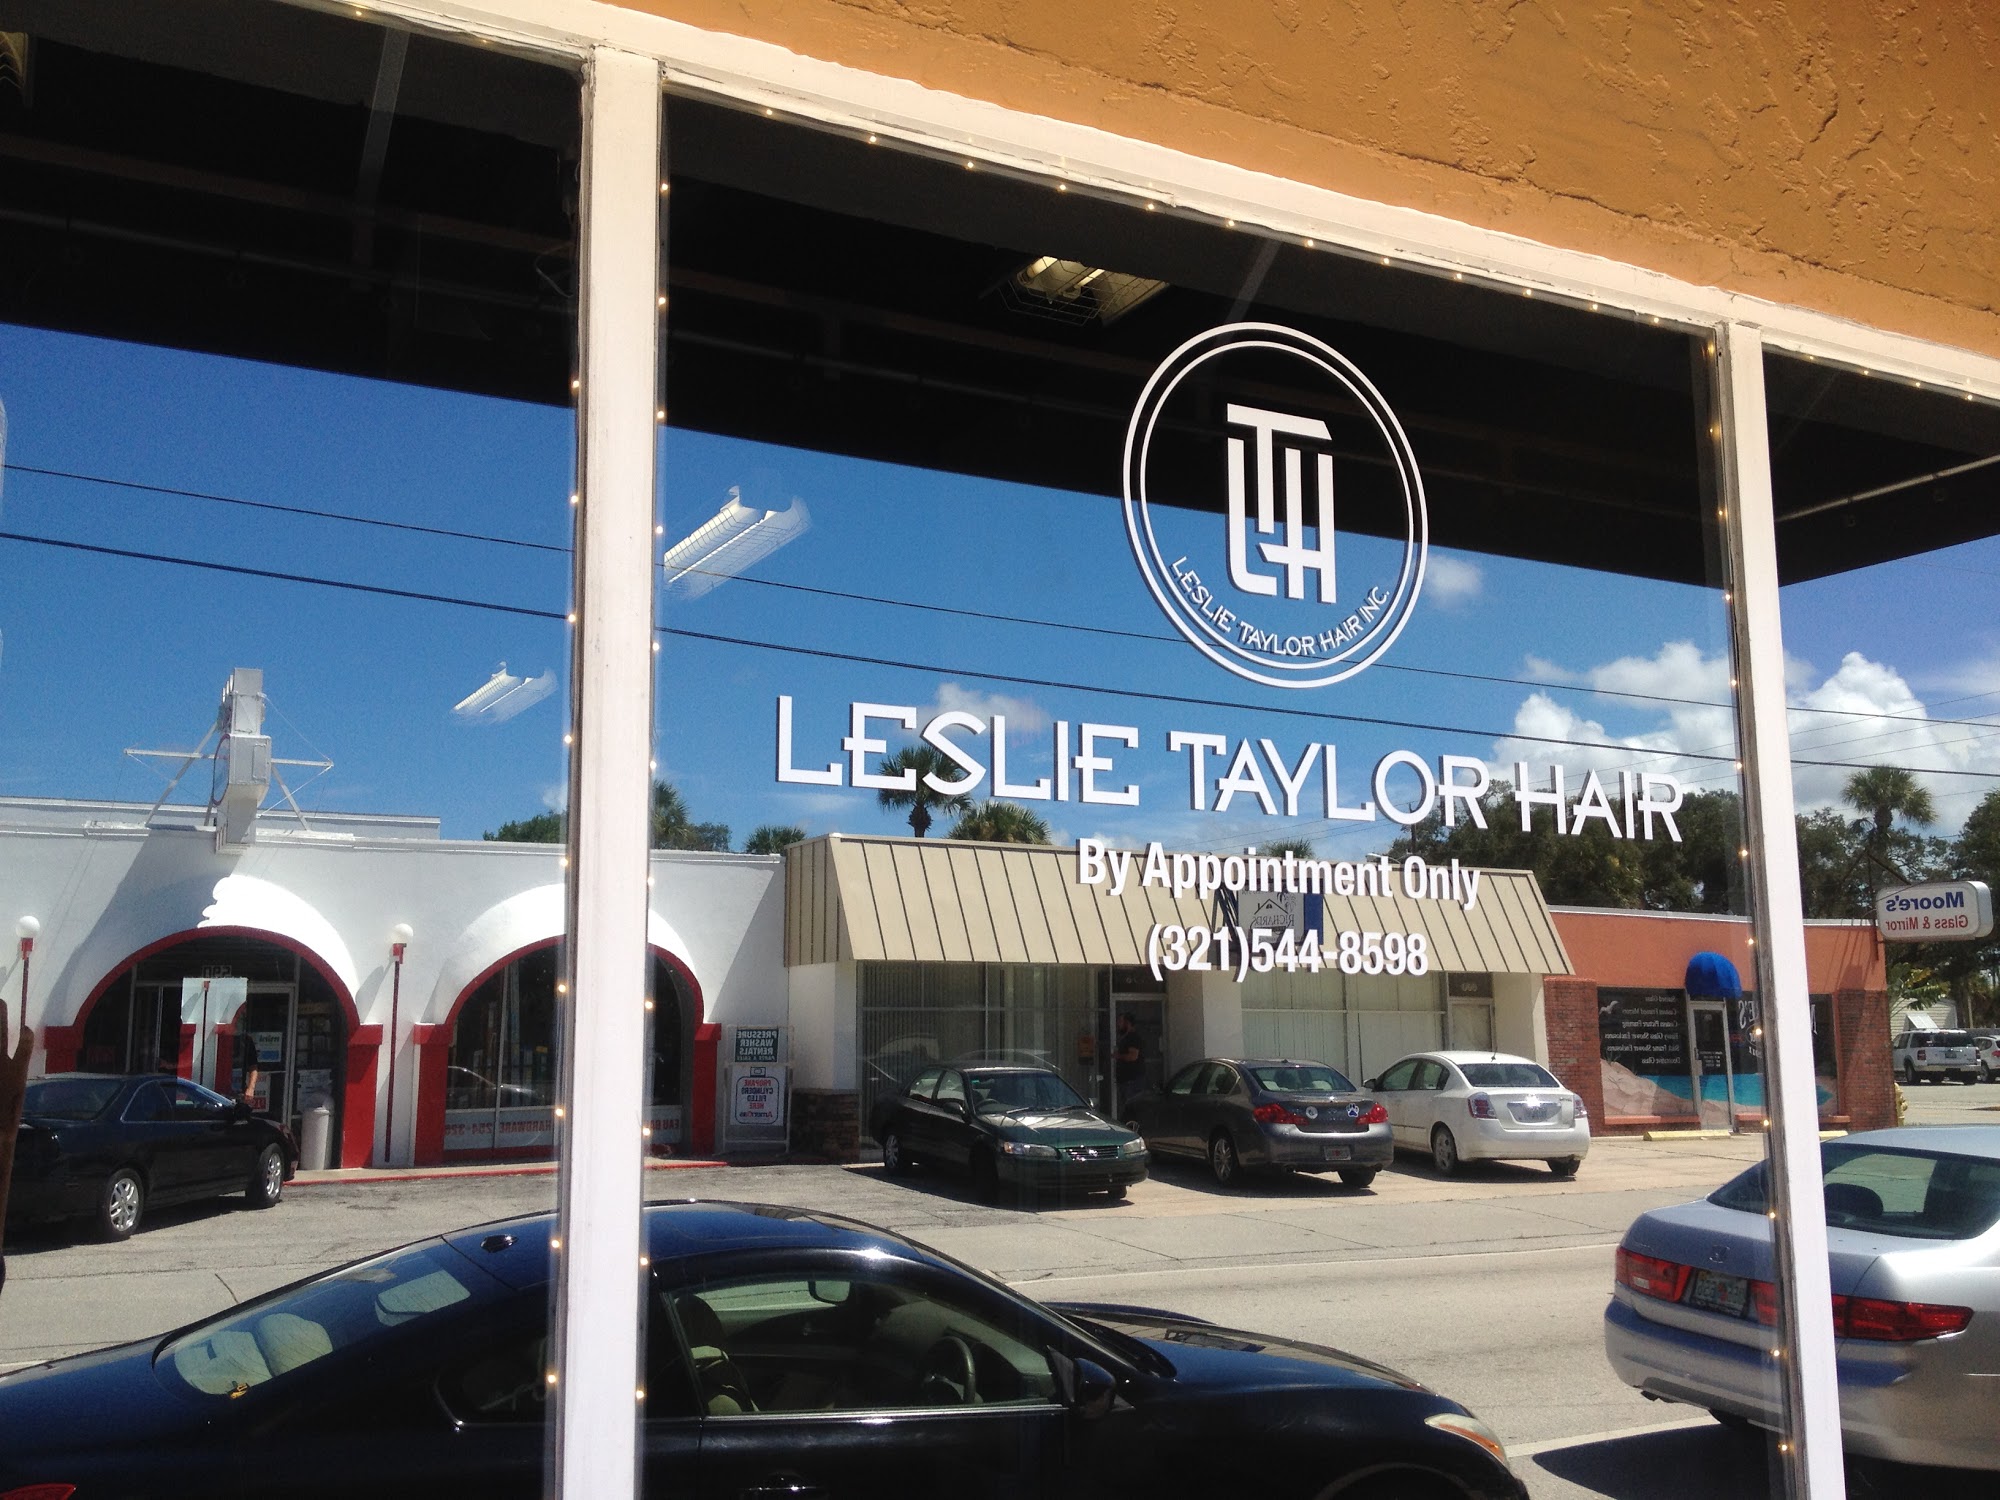 Leslie Taylor Hair Inc.